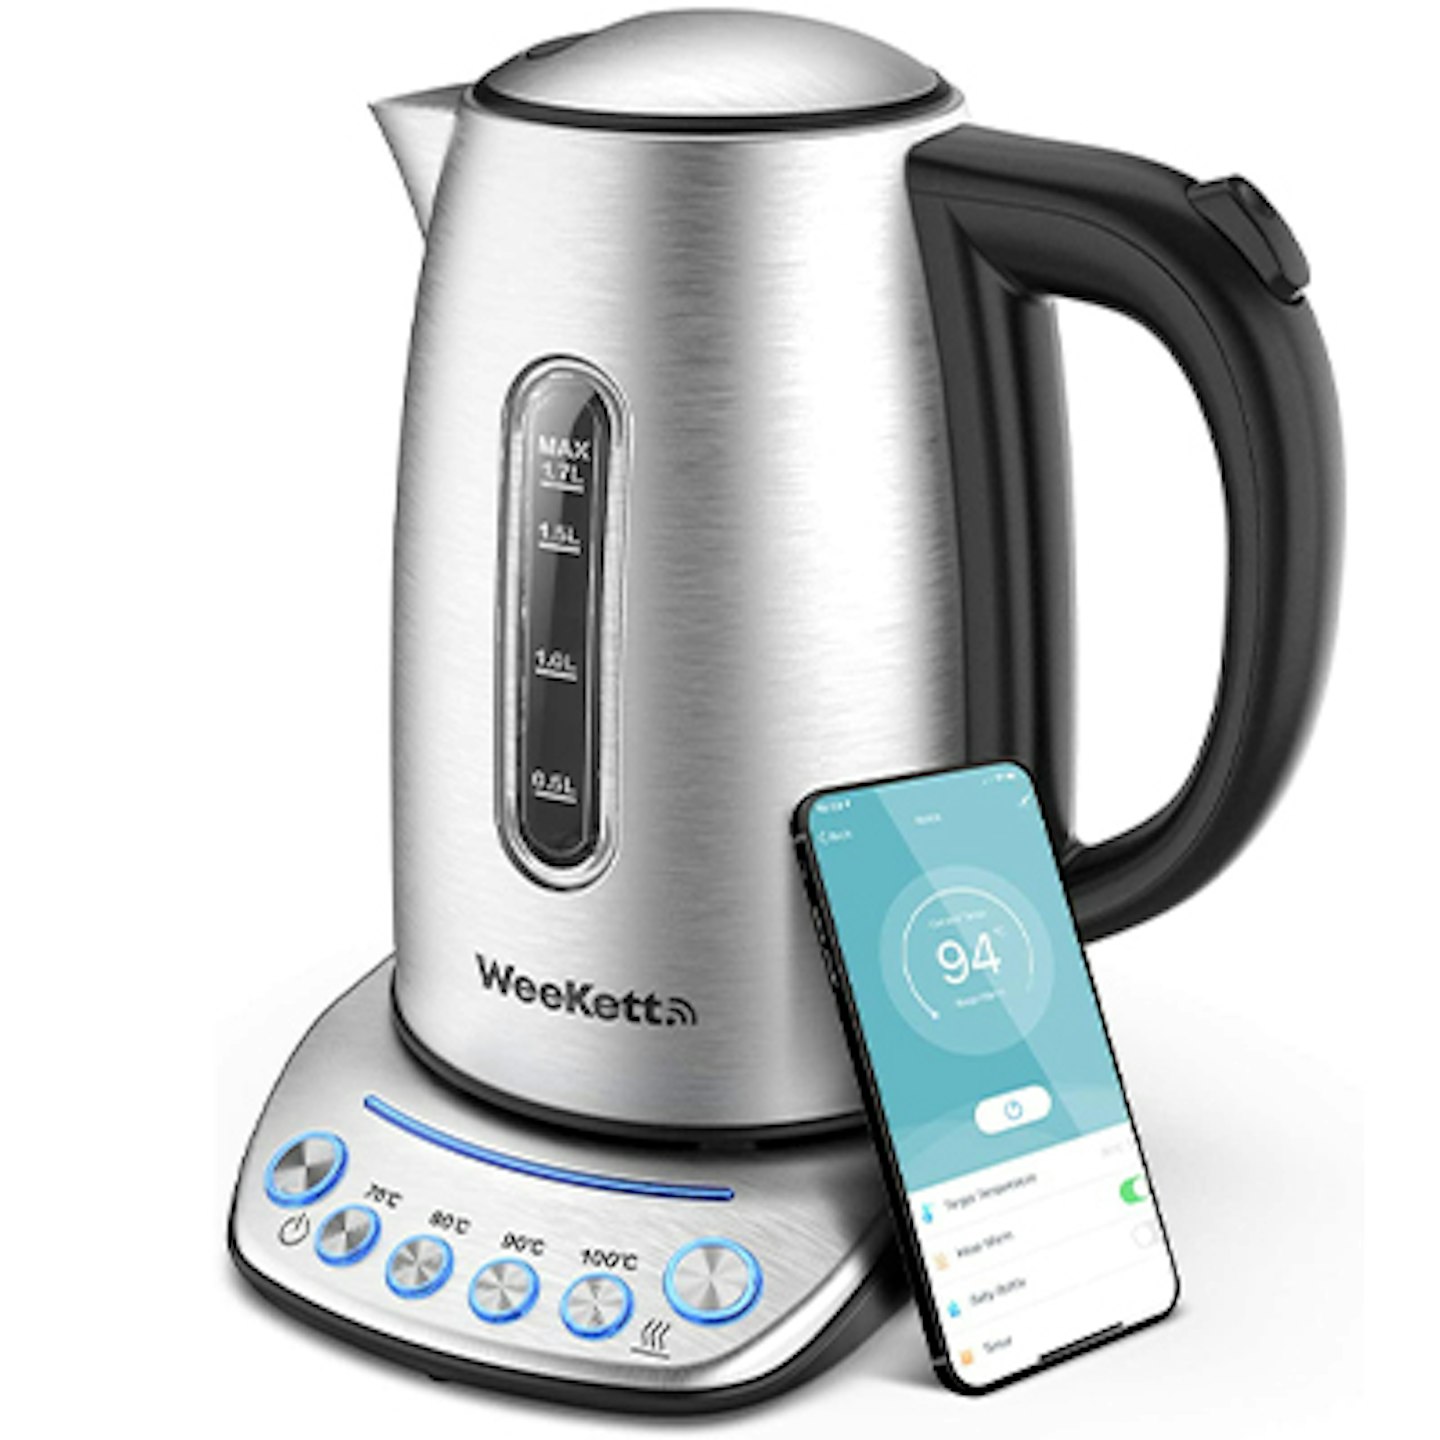 Weekett smart kettle